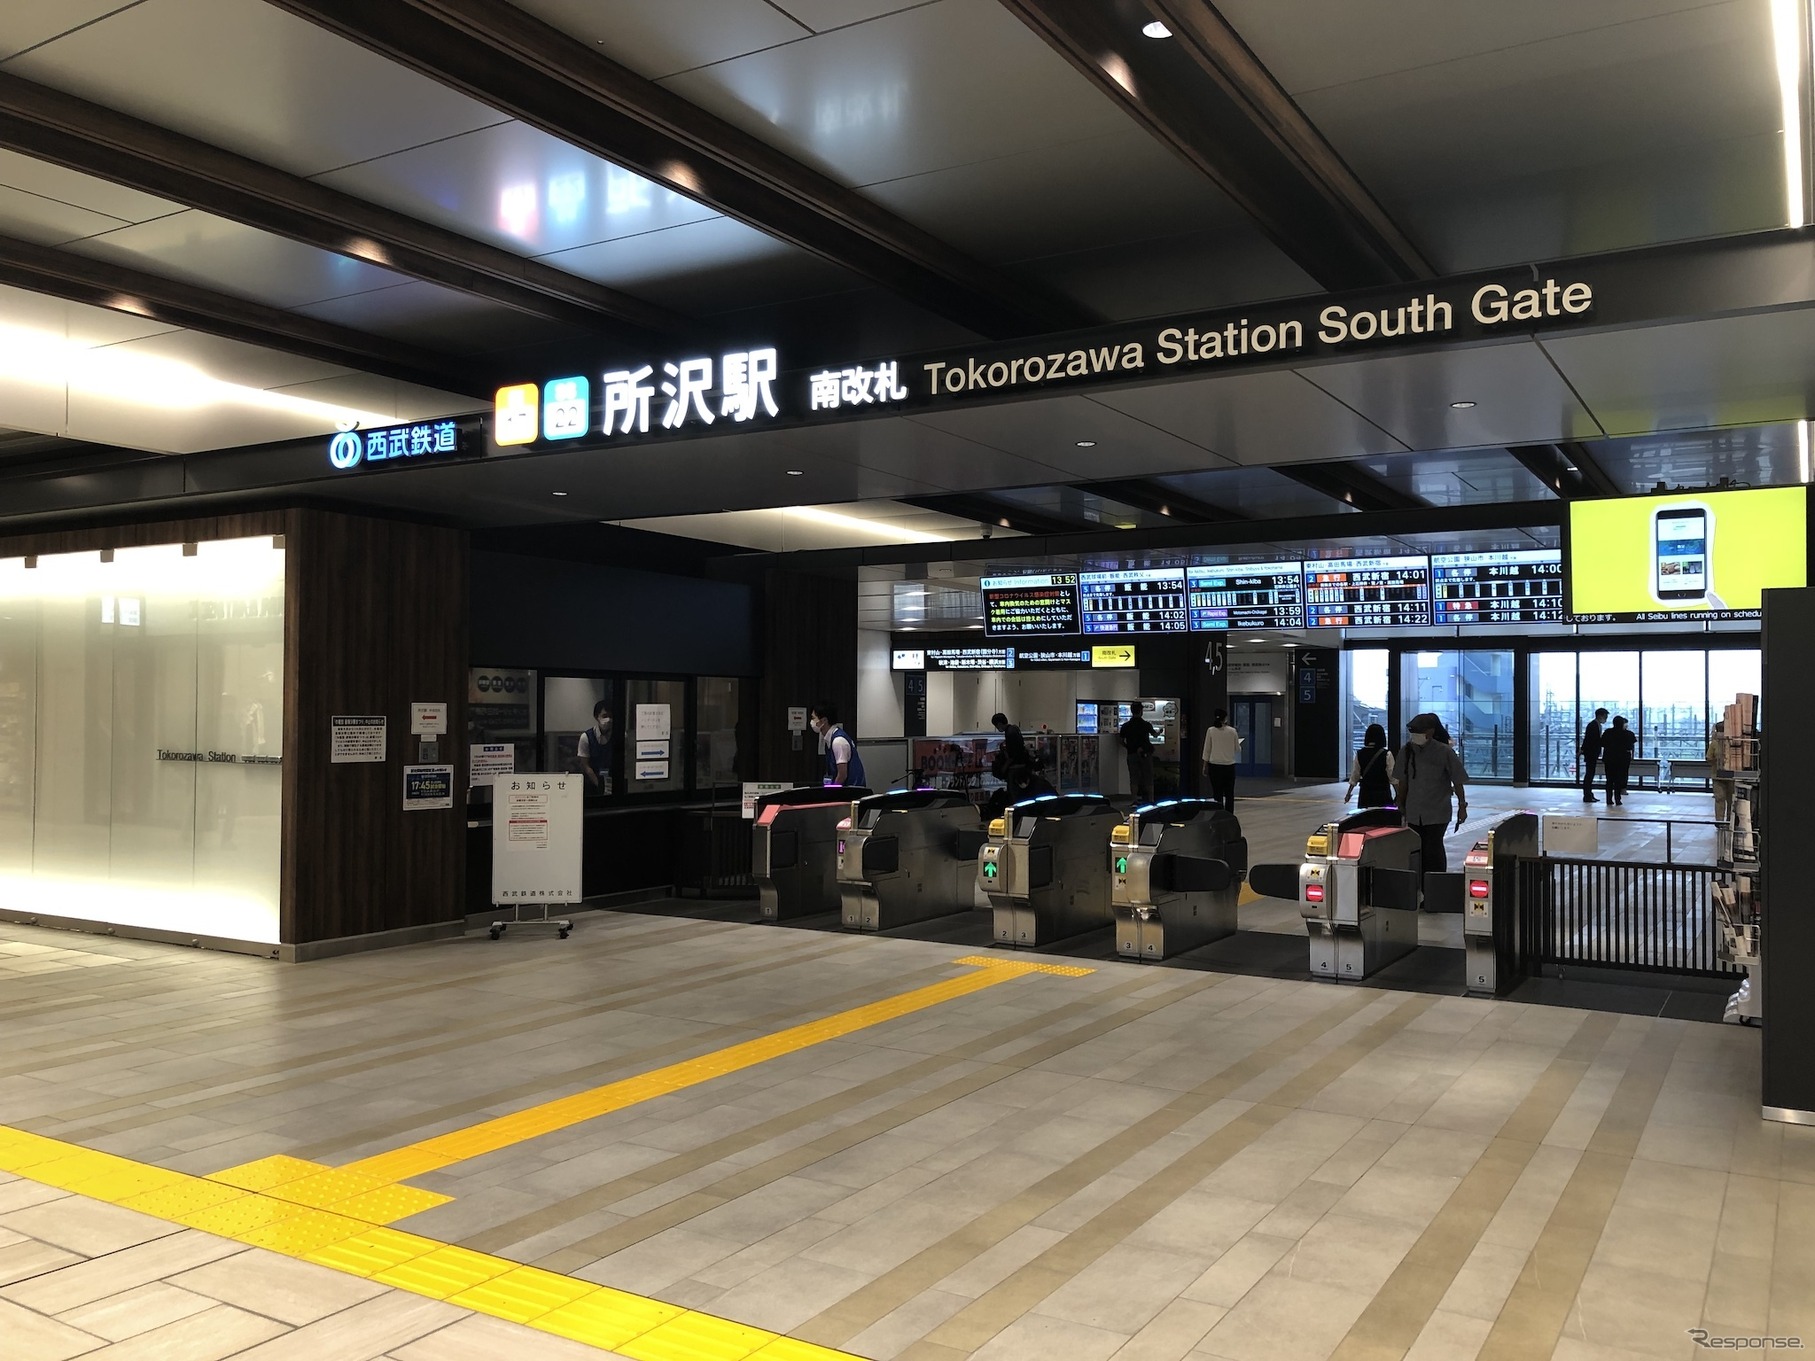 池袋線系統と新宿線系統が交わる所沢駅。池袋線では日中の急行が池袋から所沢まで最速21分で結ばれる。